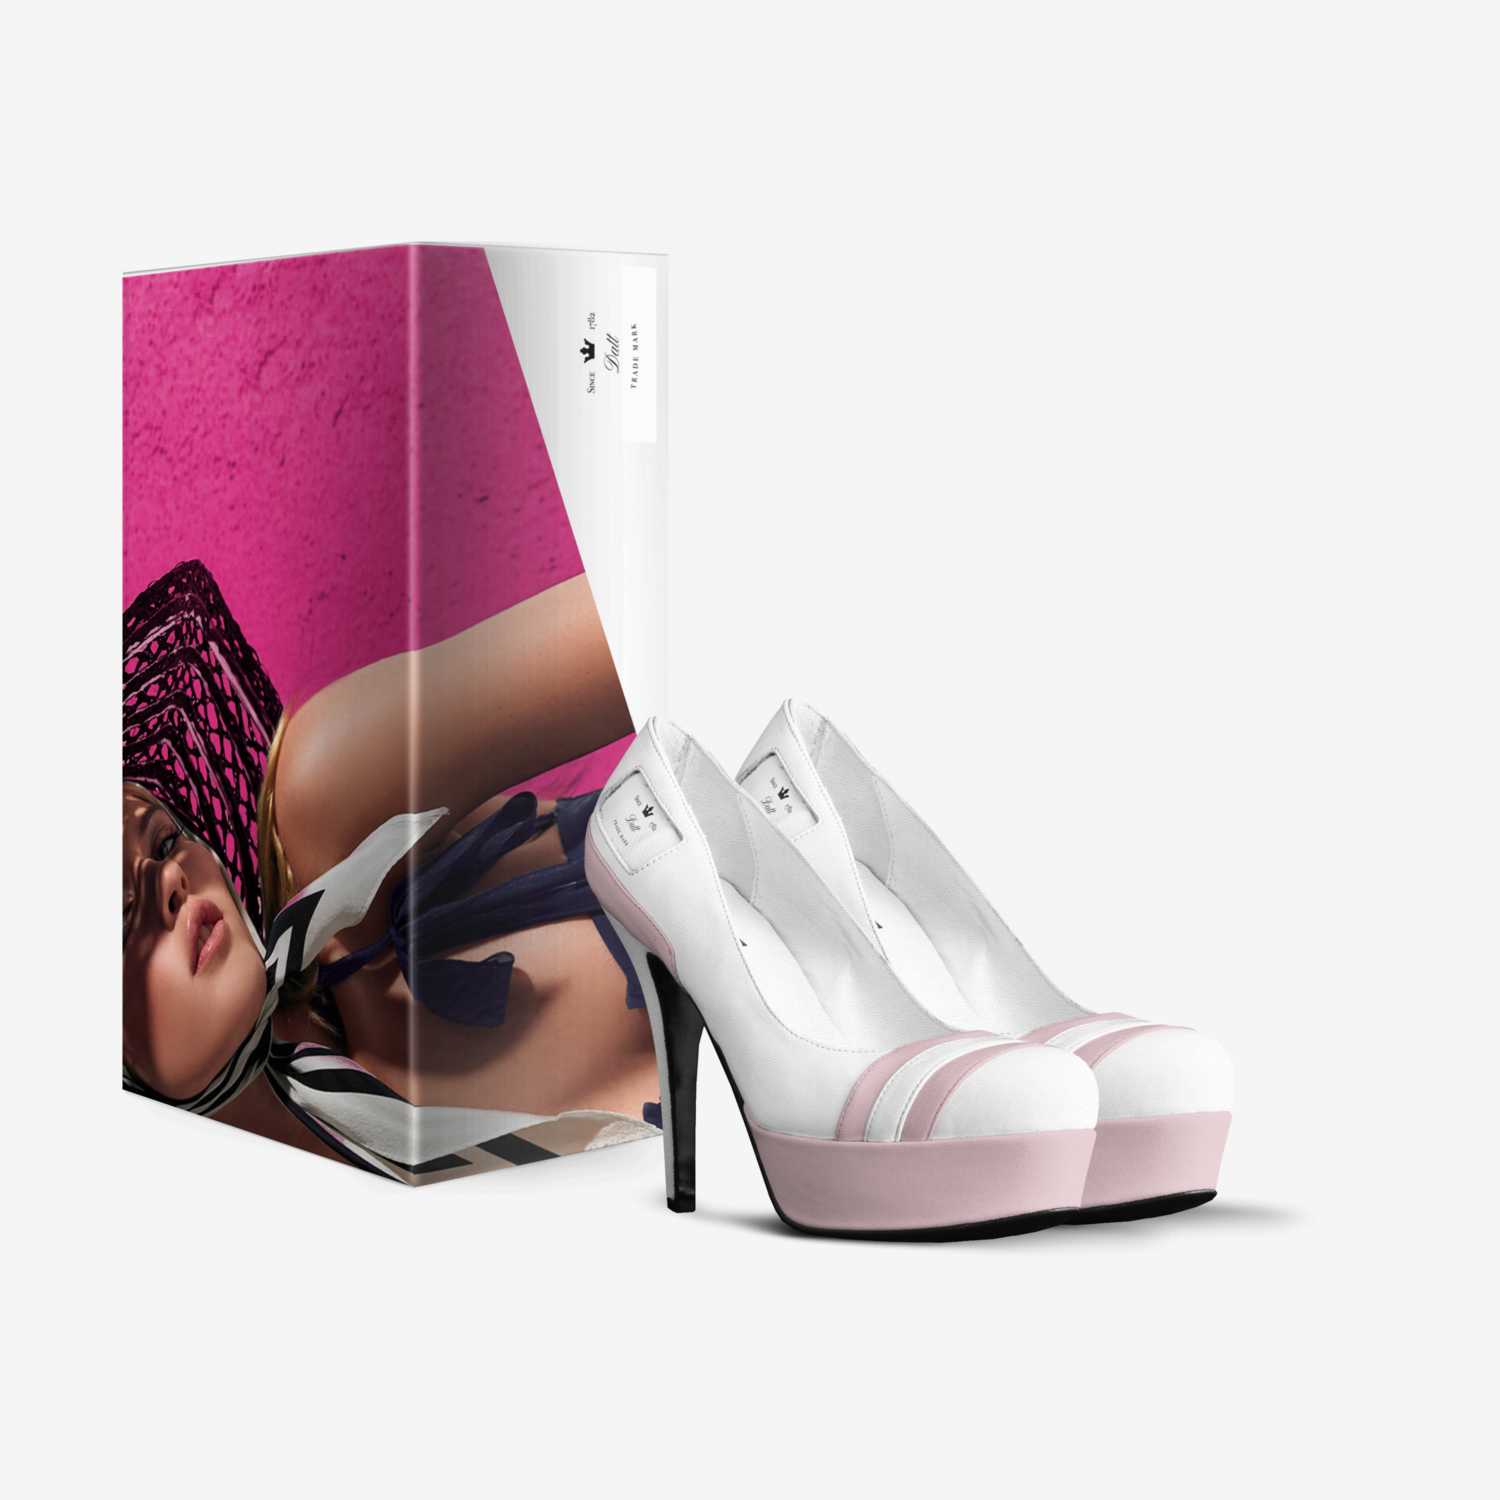 Datt custom made in Italy shoes by Đạtt Thành | Box view